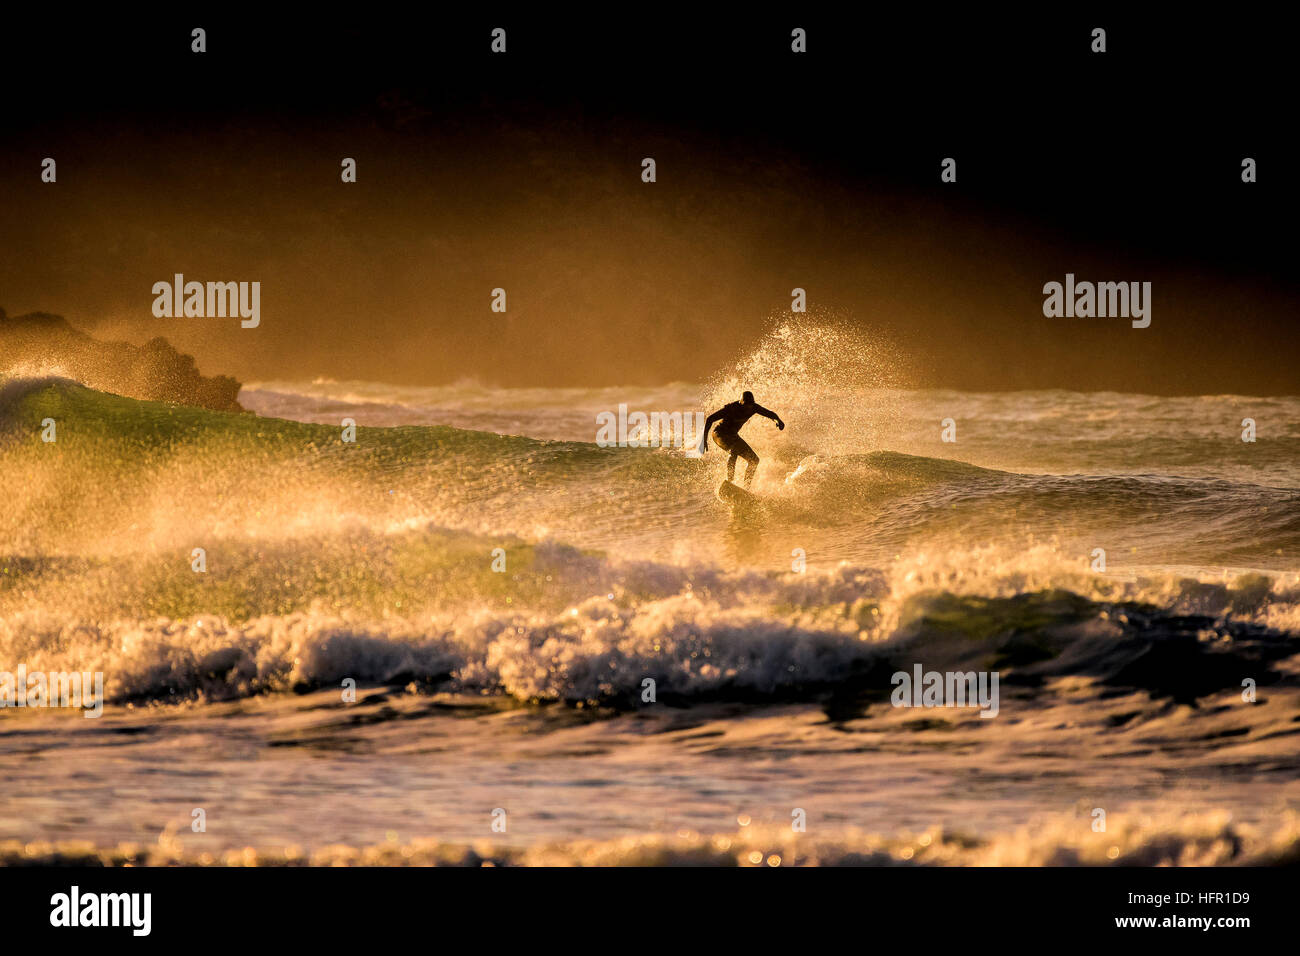 Un surfeur conduit une vague sauvage lors d'un coucher du soleil doré à la plage de Fistral, Newquay en Cornouailles. Surfer en action. UK. Banque D'Images